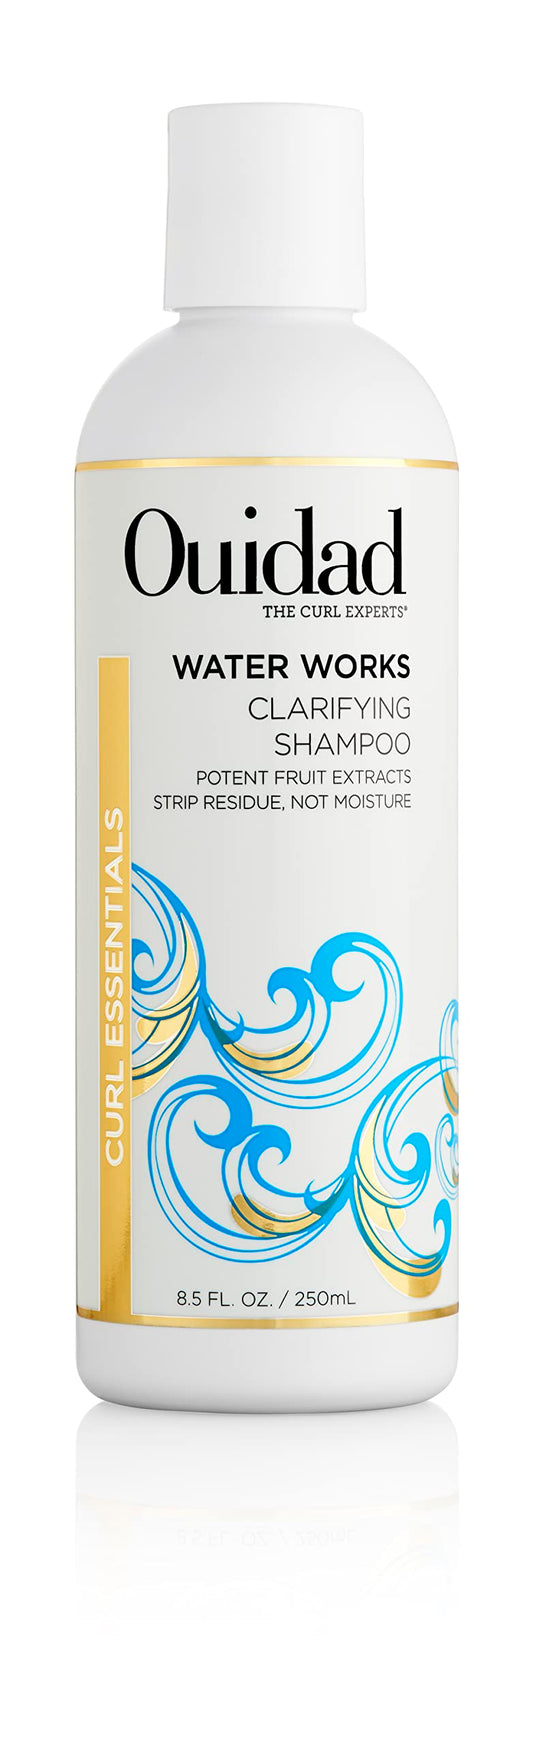 OUIDAD Water Works Clarifying Shampoo, 8.5 Fl Oz